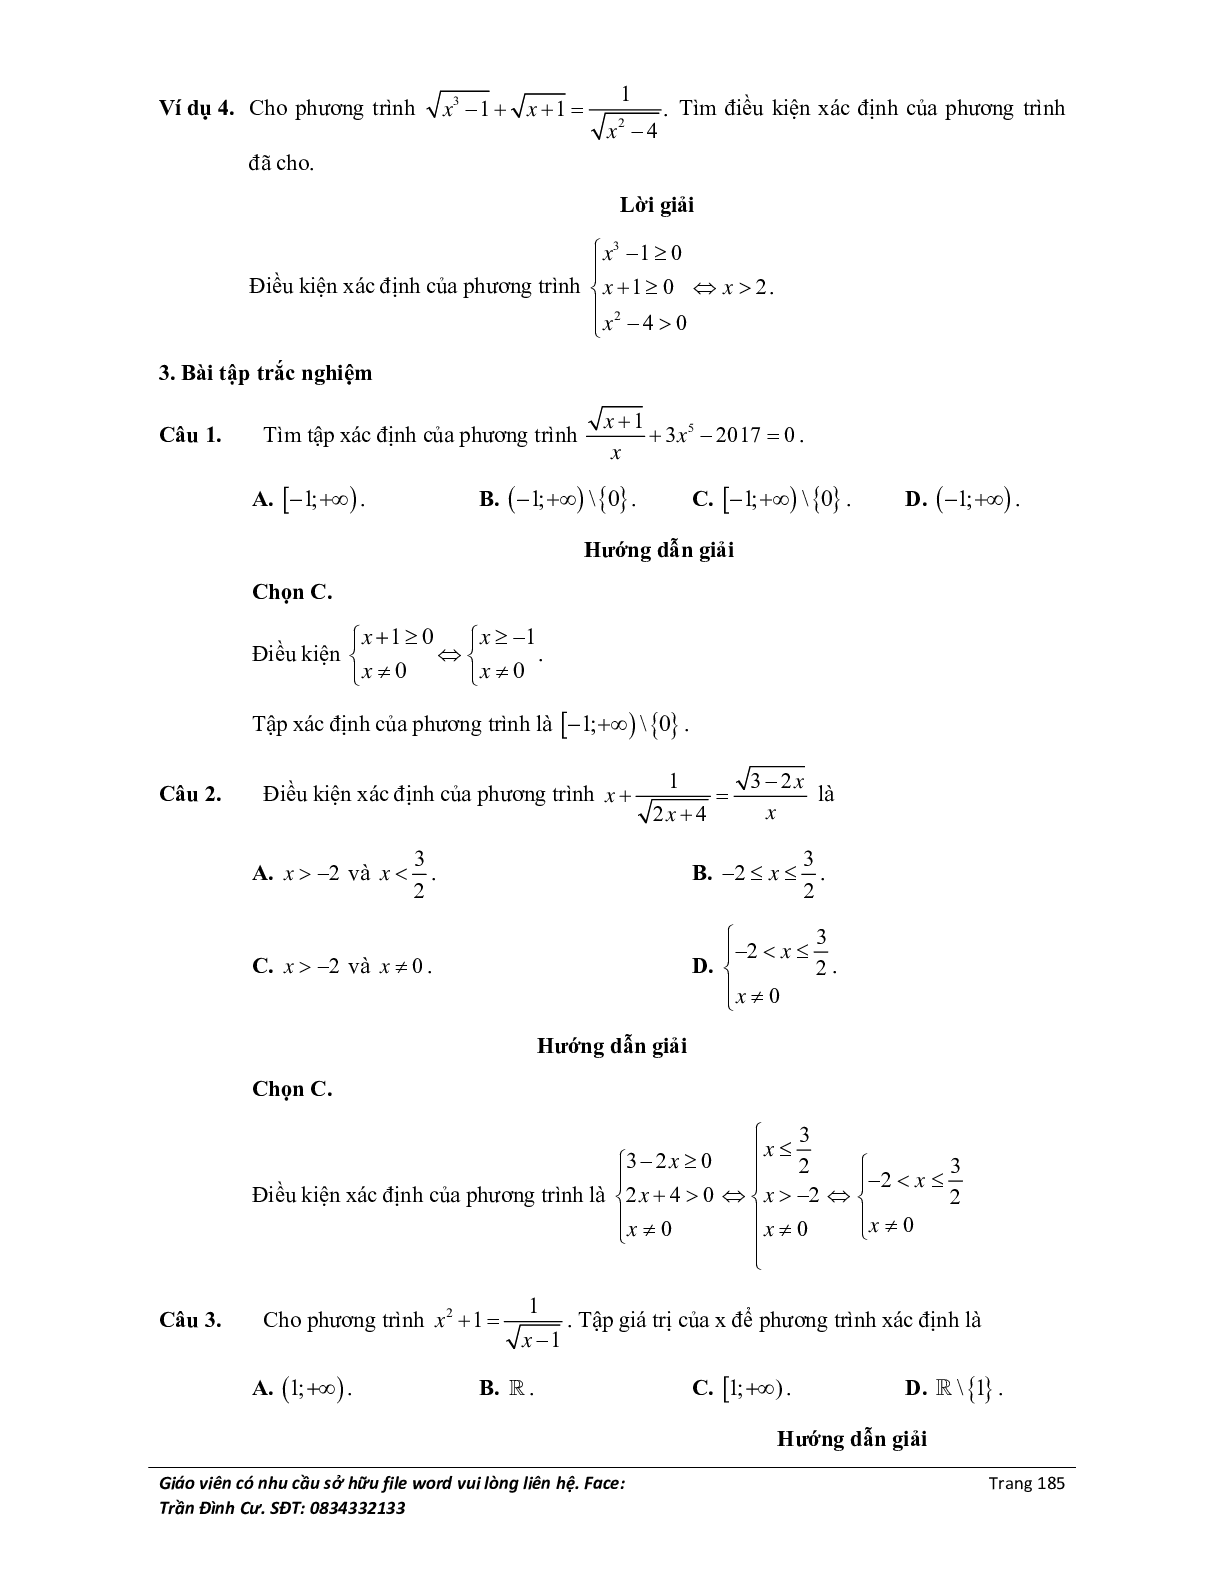 Đại cương về phương trình môn Toán lớp 10 (trang 3)